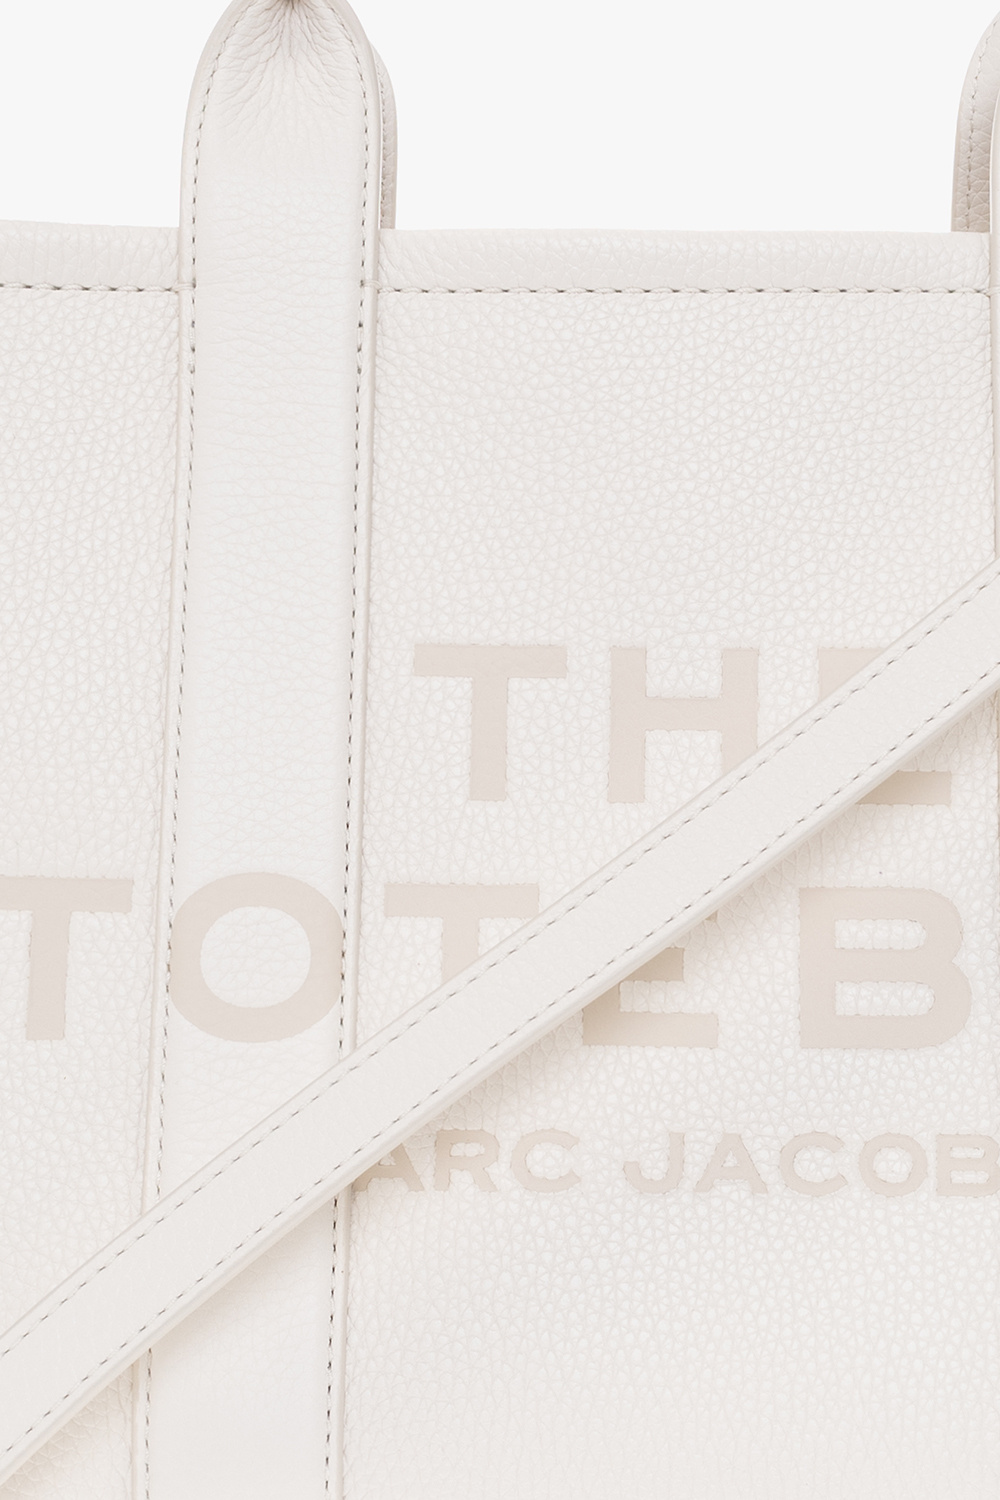 White 'Softshot Dtm' shoulder bag Marc Jacobs - Vitkac Germany